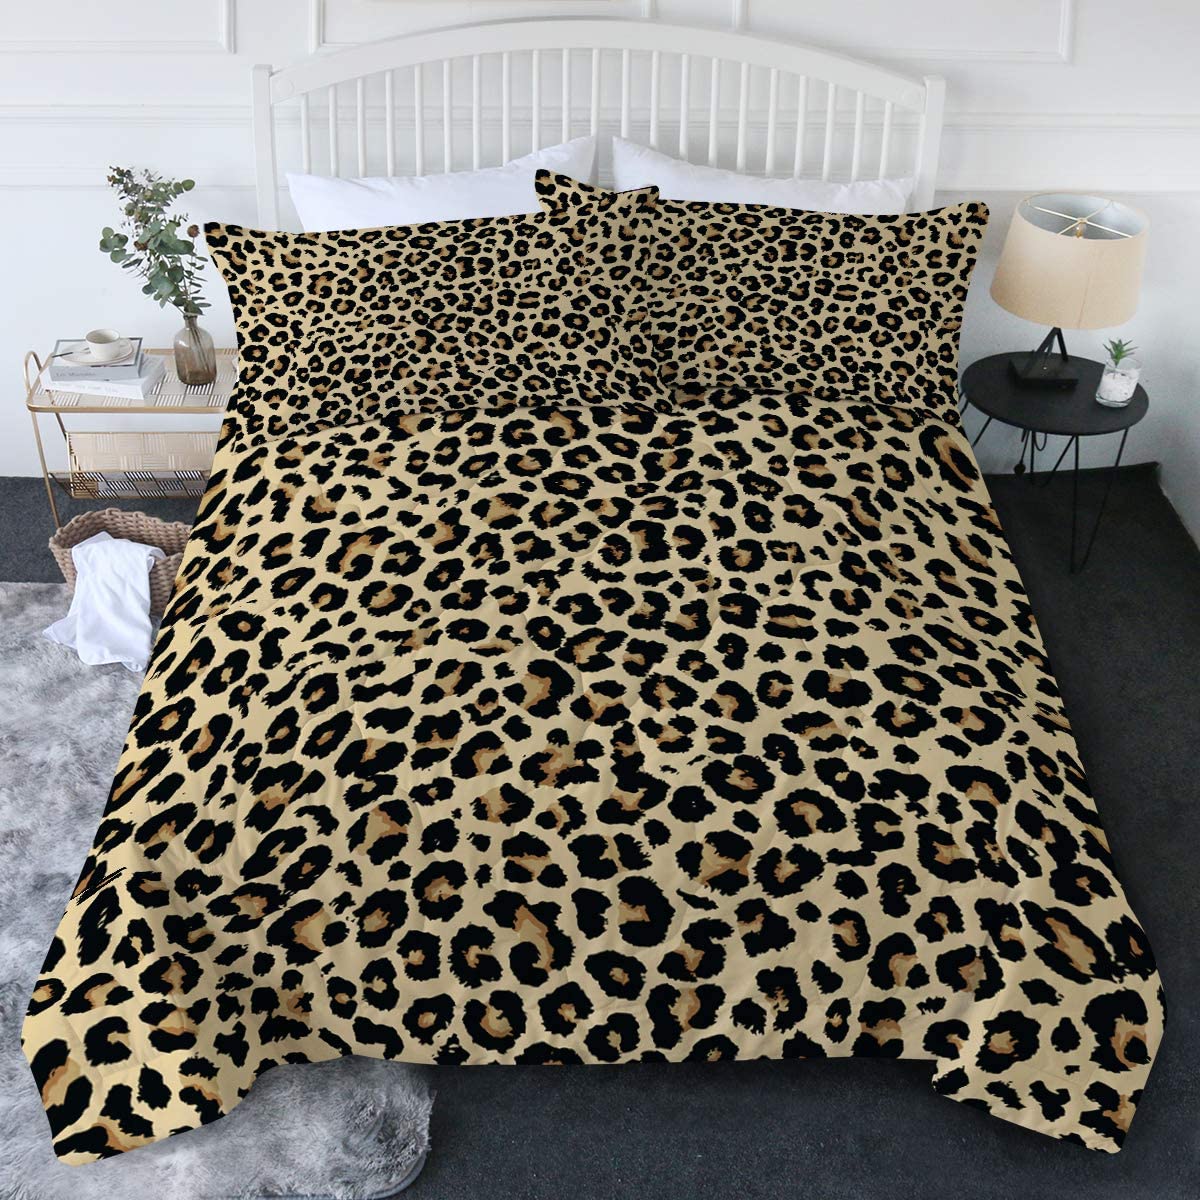 Blessliving Leopard Comforter Set, Leopard Print King Bed Sheets